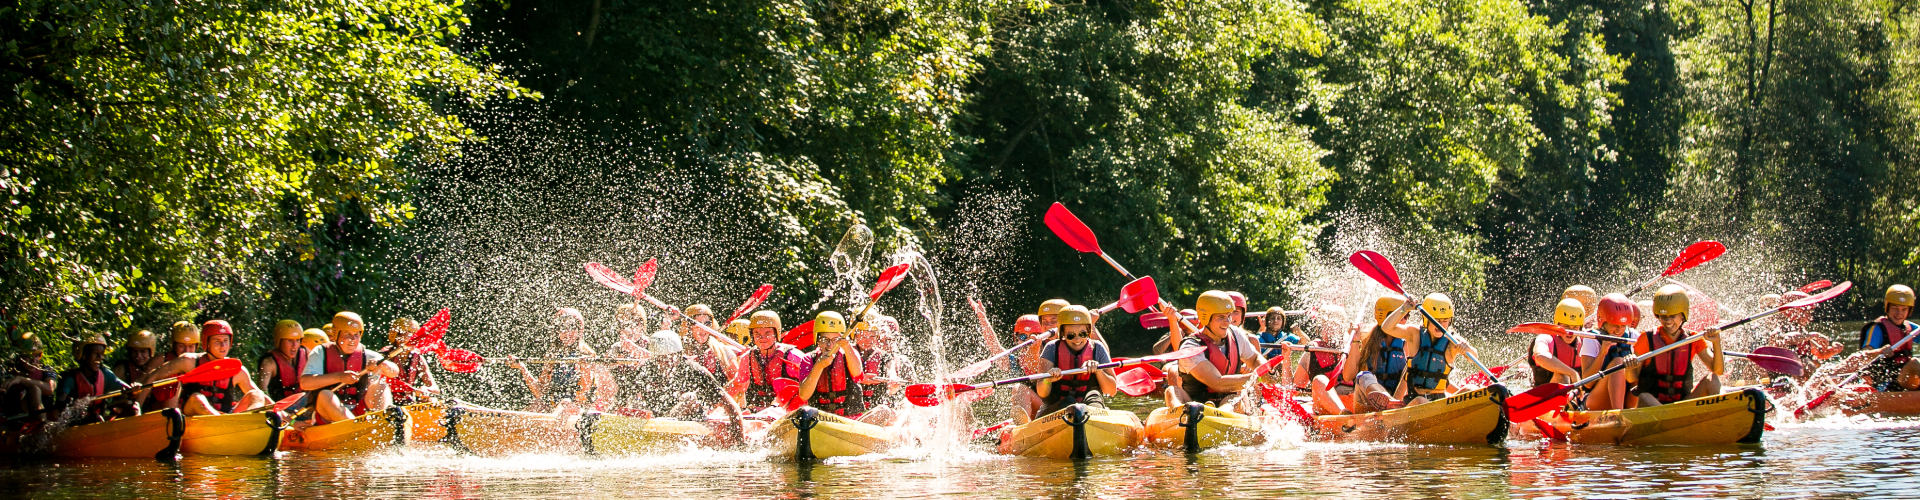 kano kanoën Ourthe bossen blijdschap spetters geweldig superleuk lachend leerlingen scholen samen